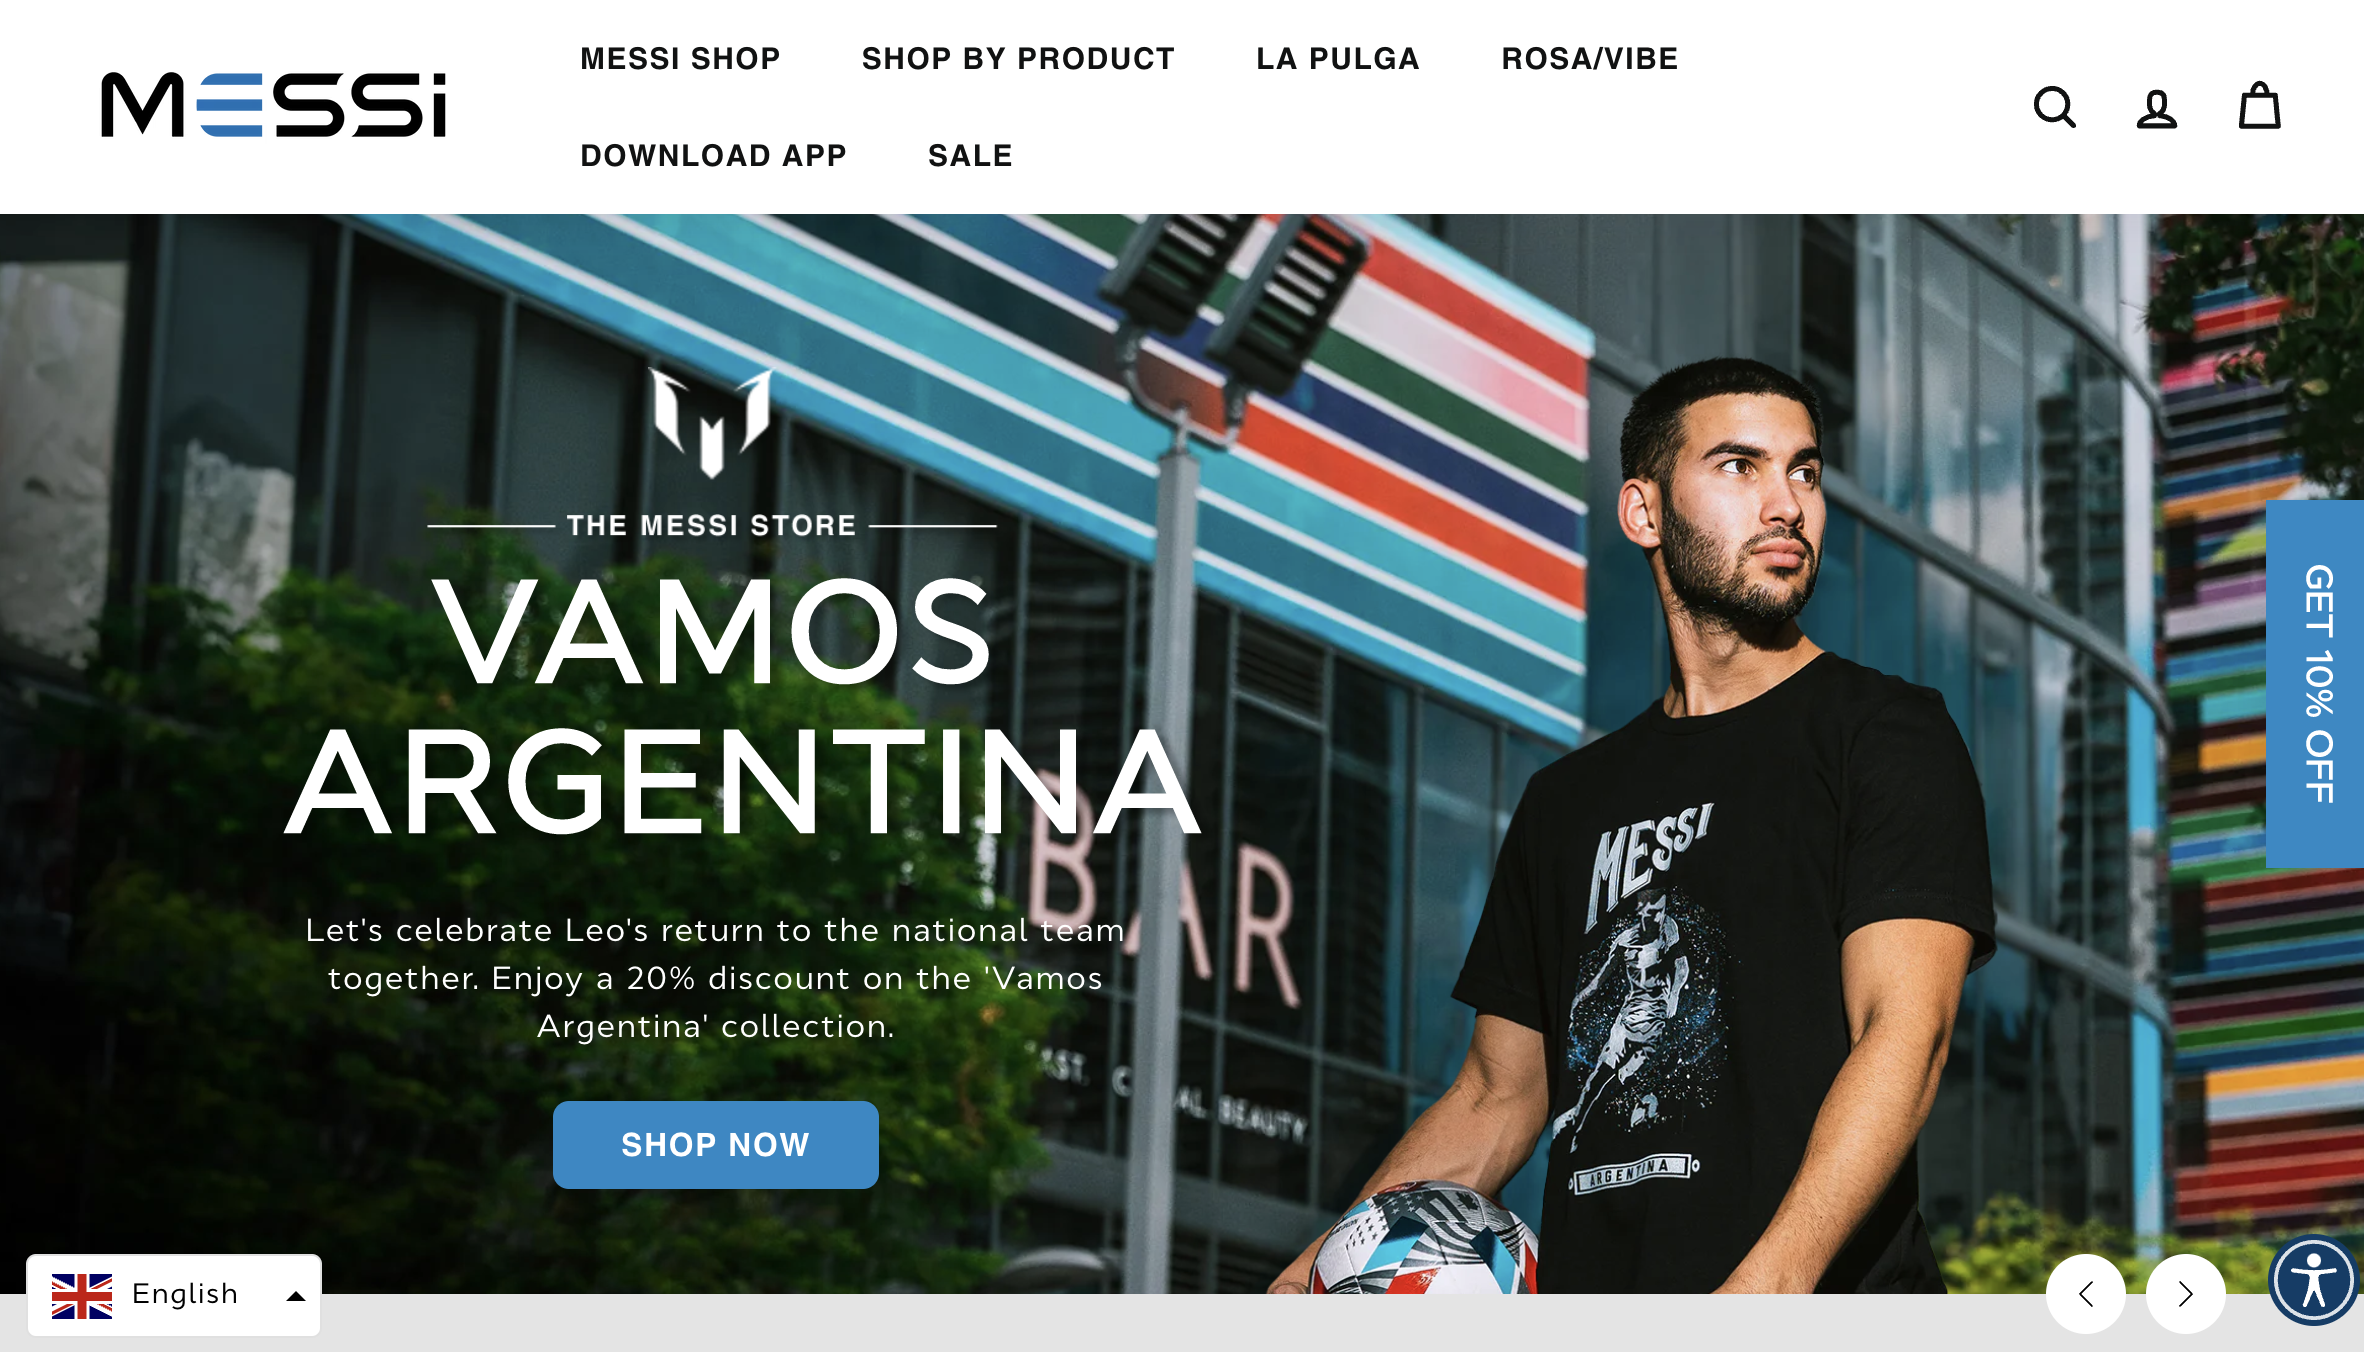 足球巨星梅西的授权品牌 The MESSI Store 上财季销售增长134%，但亏损翻番